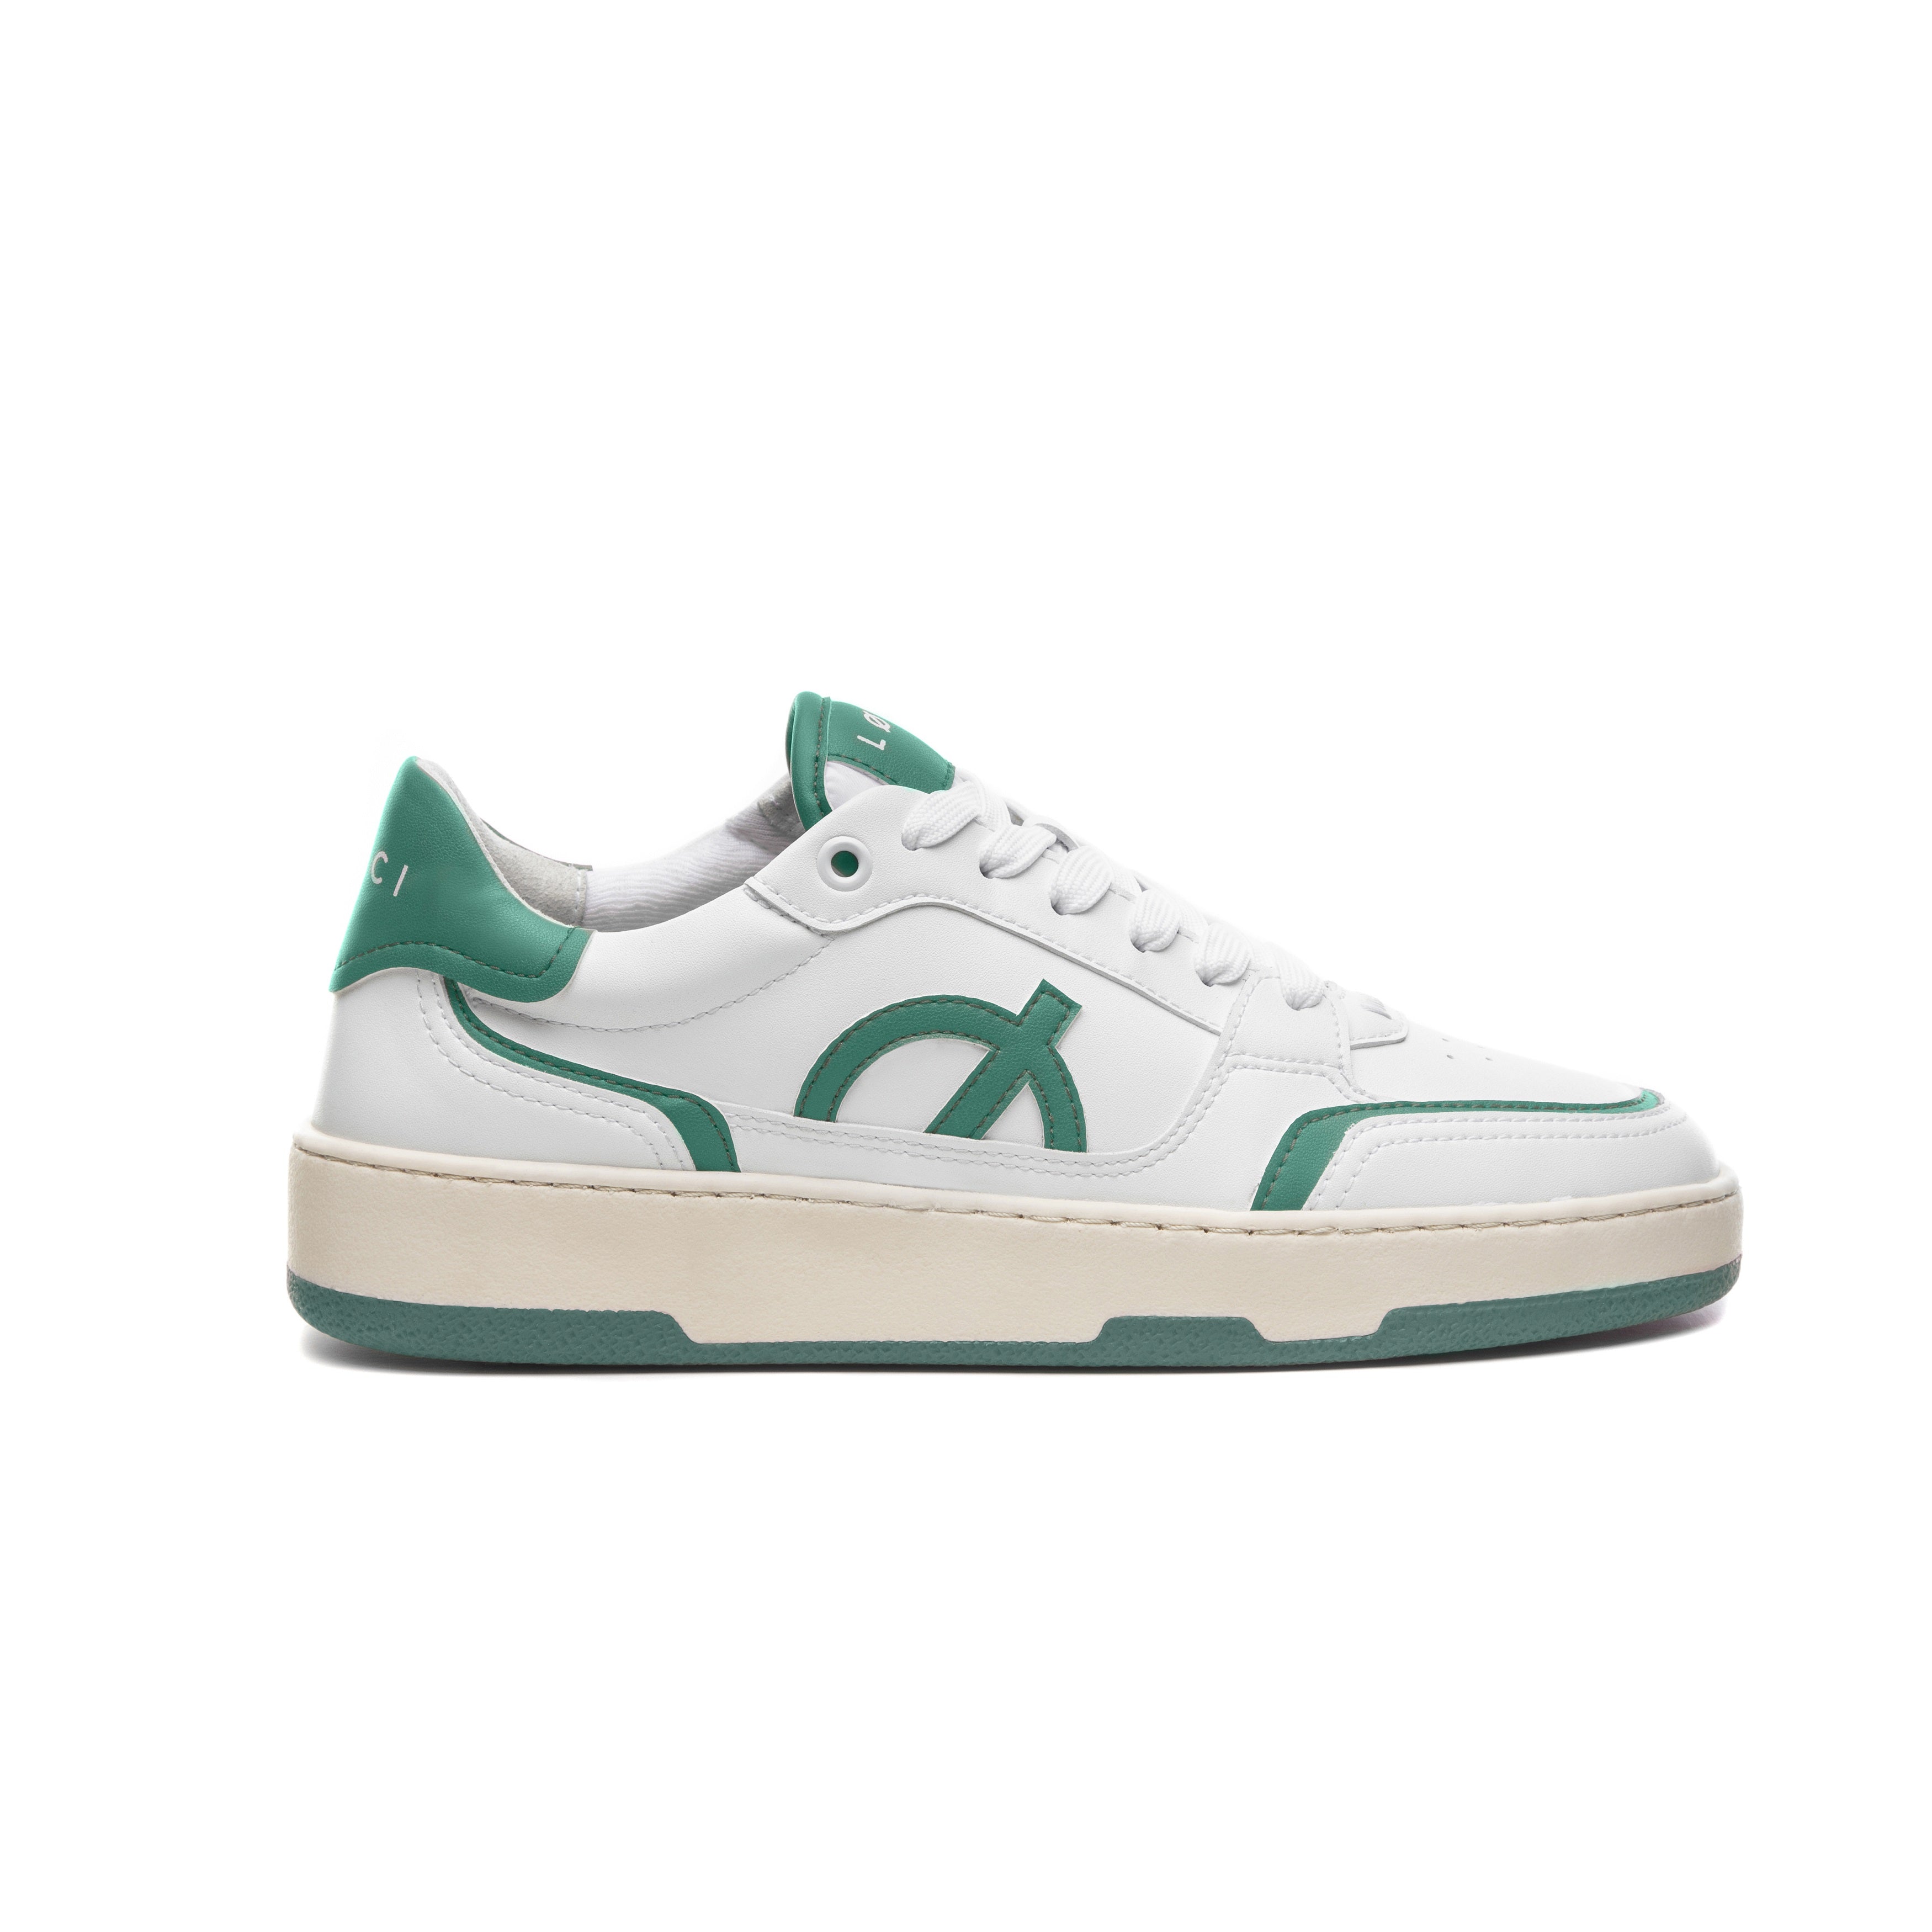 Loci Neo Sneaker White/Cream/Green 3.5 